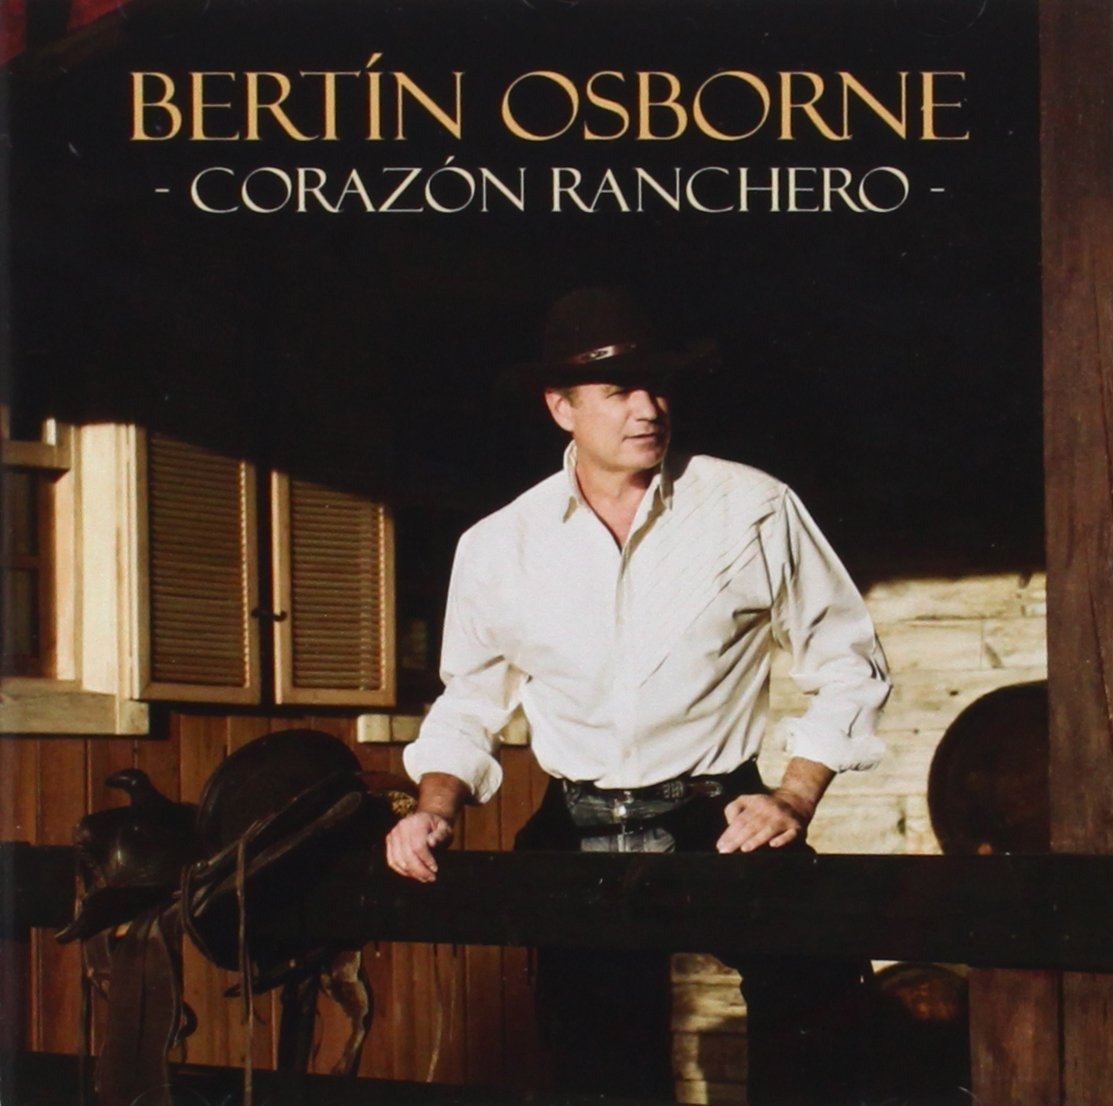 CD Shop - OSBORNE, BERTIN CORAZON RANCHERO